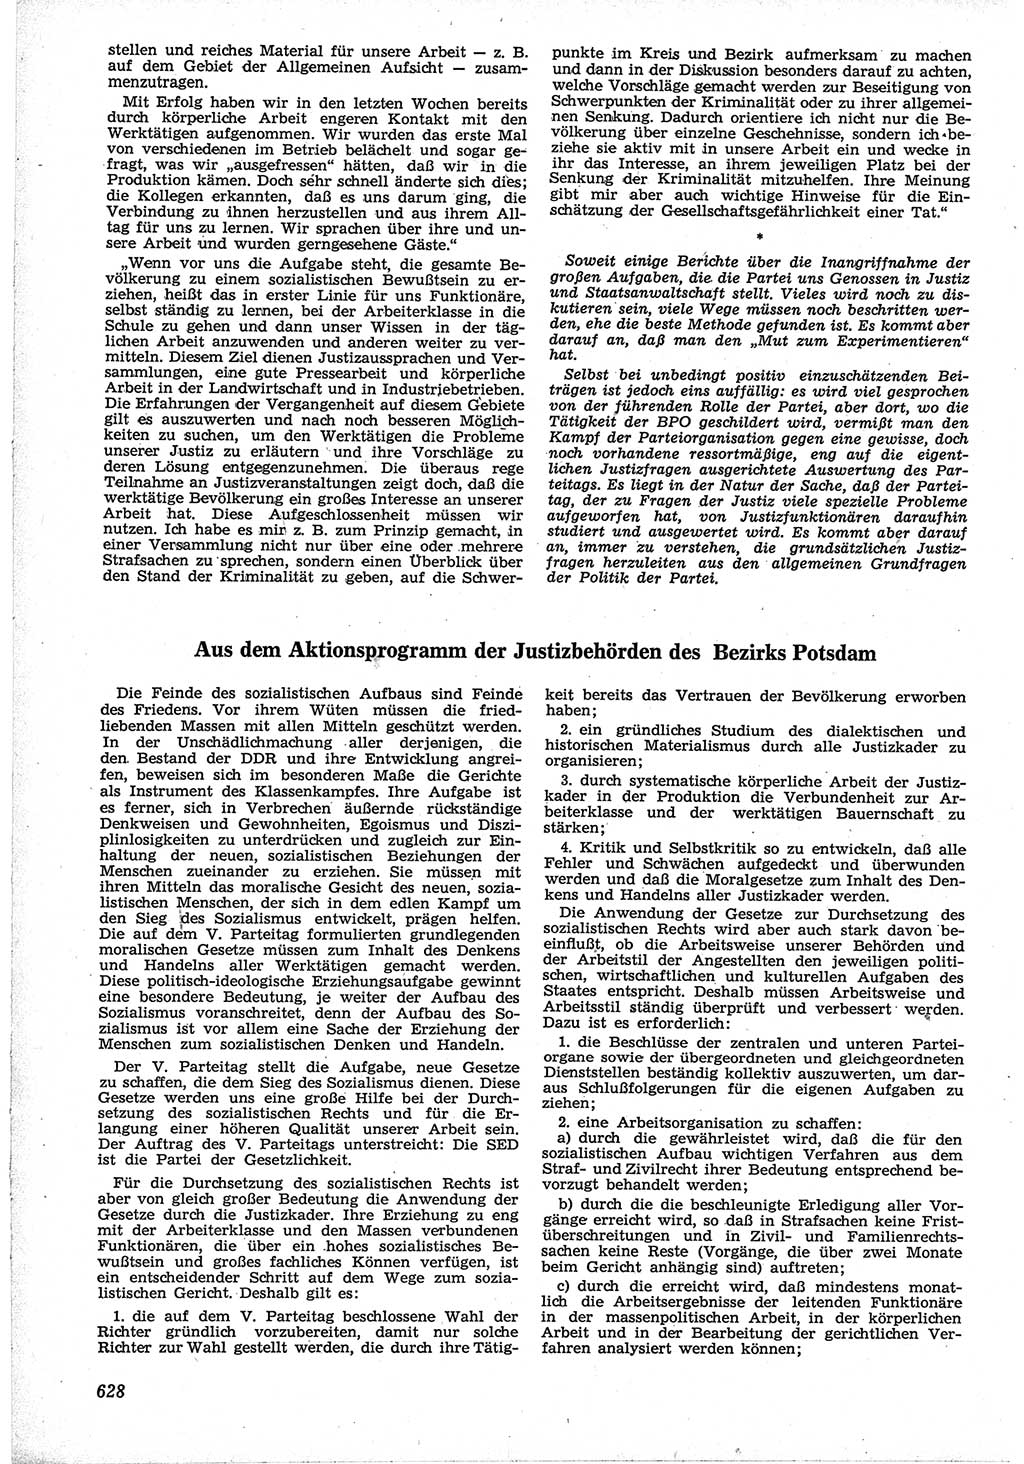 Neue Justiz (NJ), Zeitschrift für Recht und Rechtswissenschaft [Deutsche Demokratische Republik (DDR)], 12. Jahrgang 1958, Seite 628 (NJ DDR 1958, S. 628)